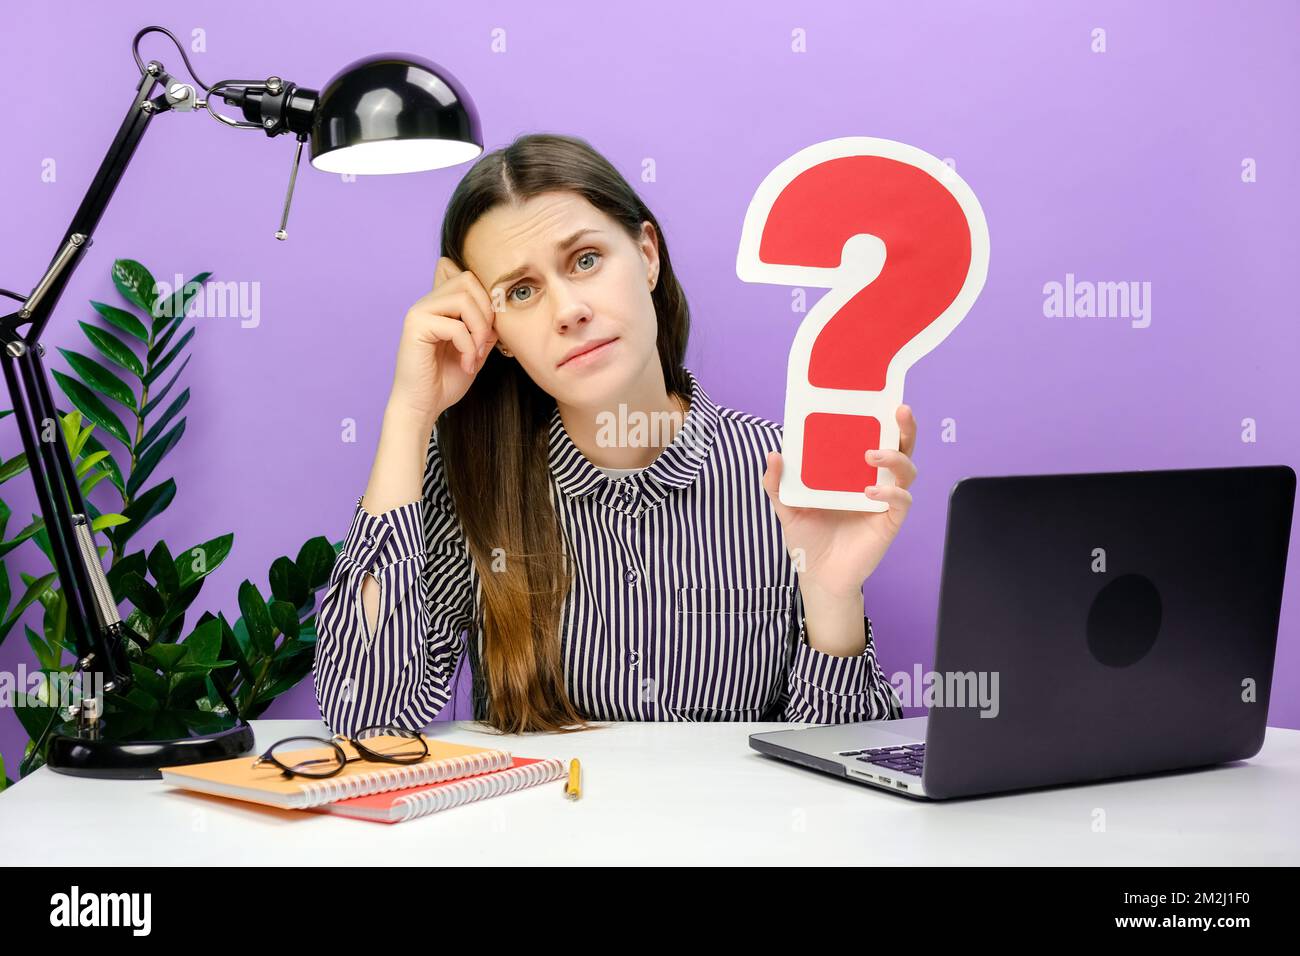 Eine pensive, traurige junge Mitarbeiterin im Alter von 20s Jahren, die am weißen Büroschreibtisch-pc-Laptop sitzt und ein rotes Fragezeichen hält und isoliert über violett posiert Stockfoto